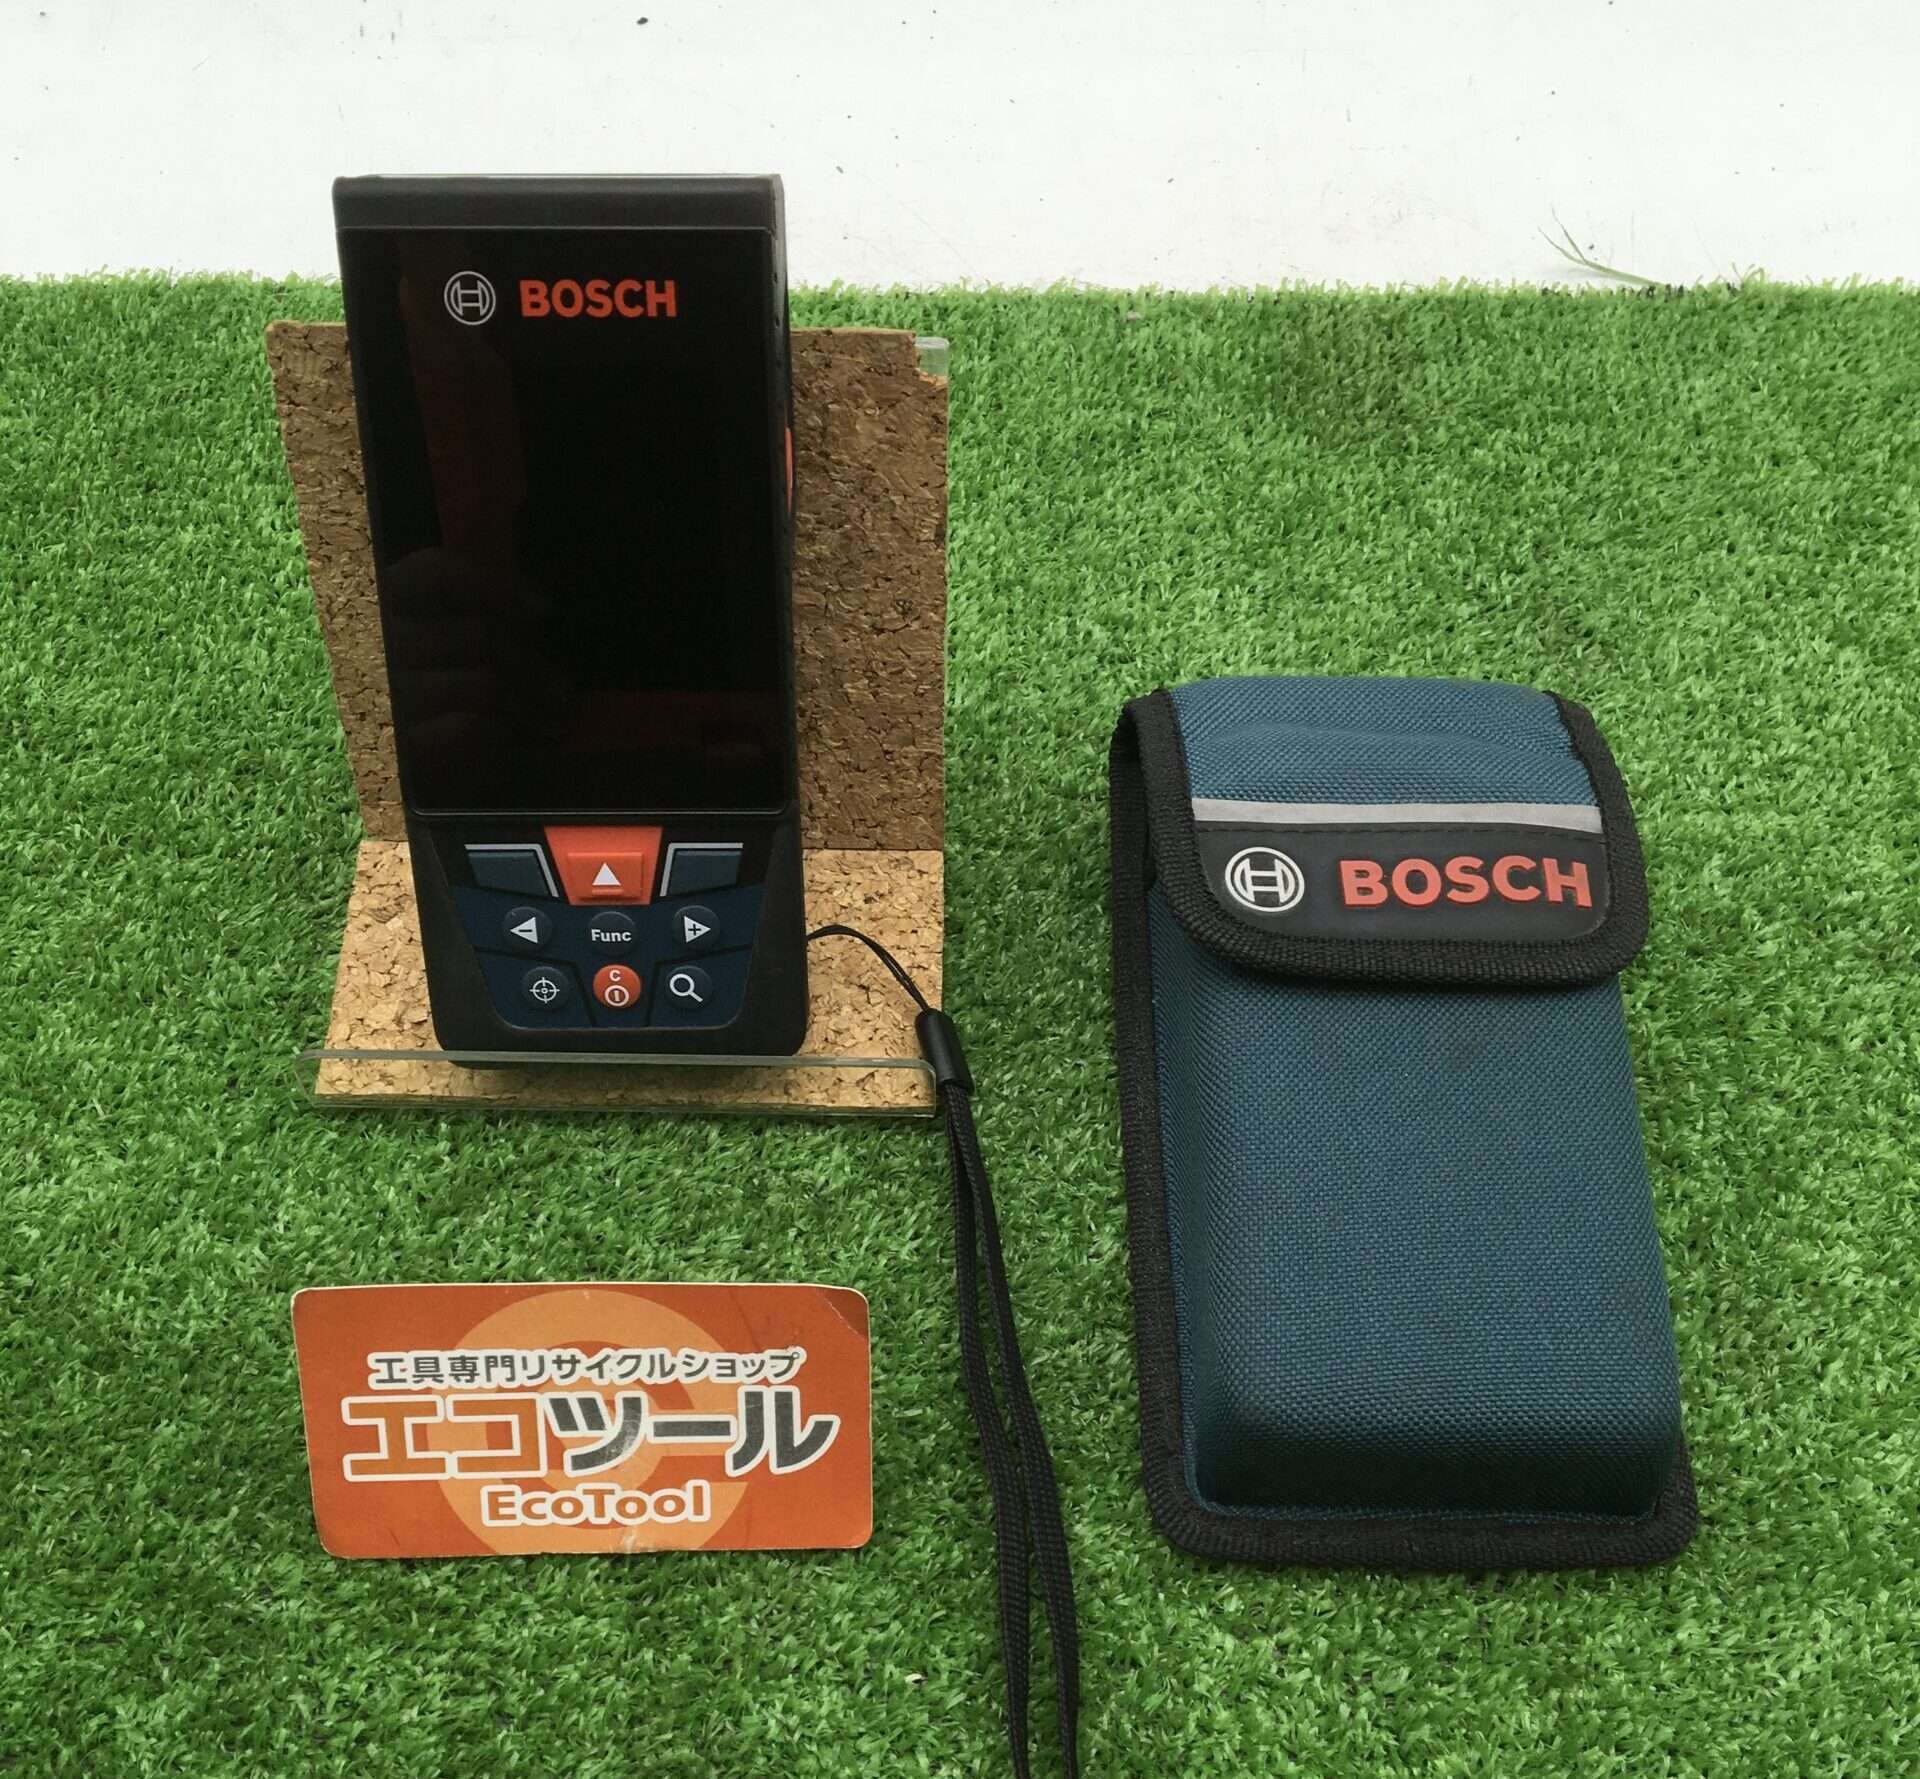 BOSCH/ボッシュ データ転送レーザー距離計 GLM150C型を買取いたしまし